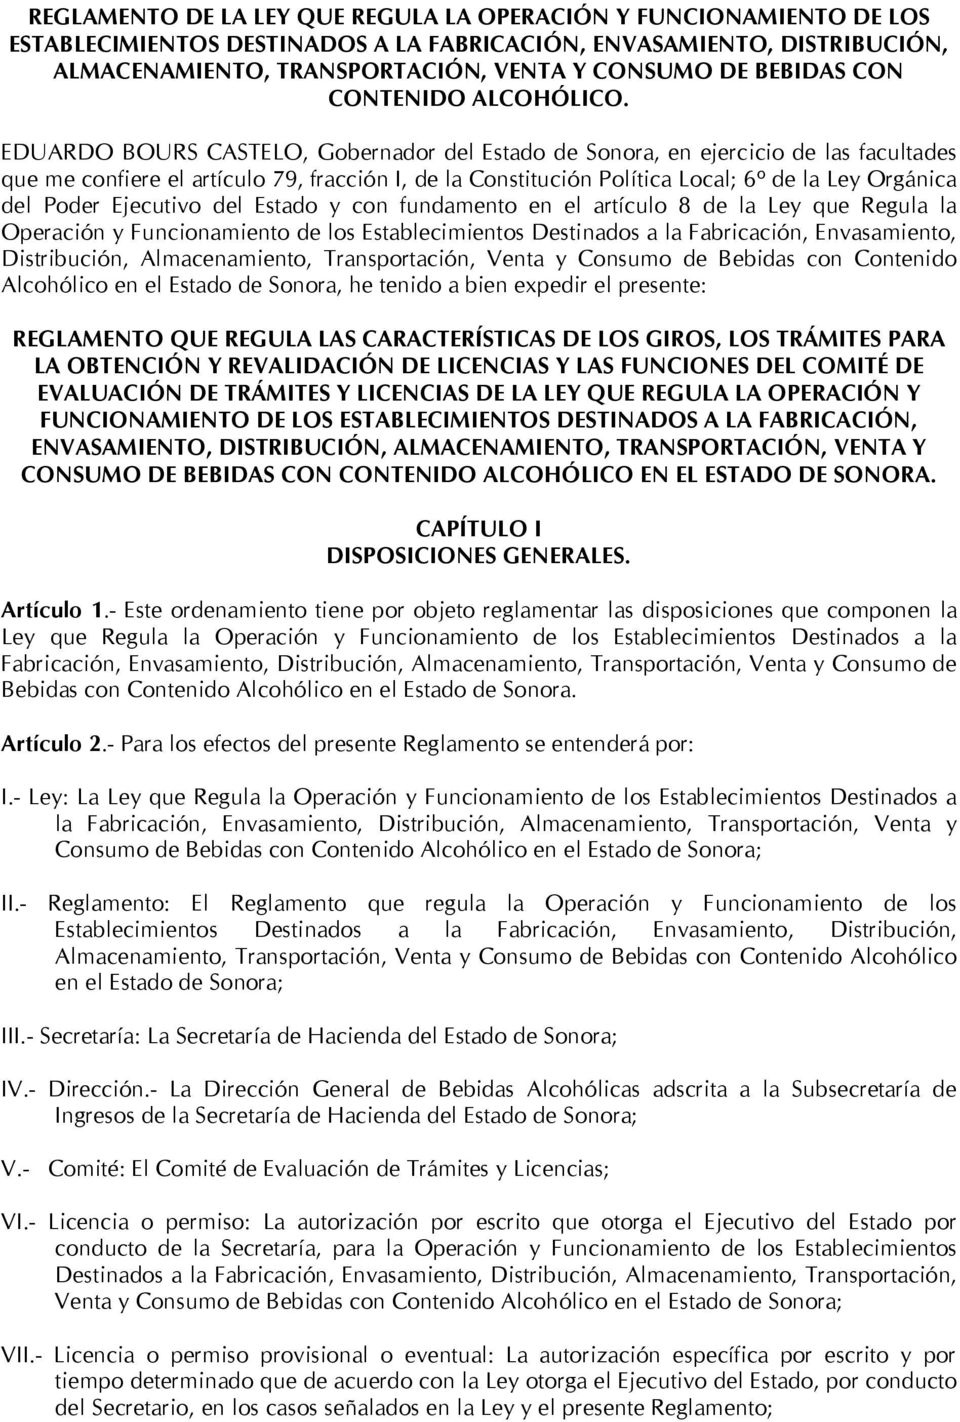 EDUARDO BOURS CASTELO, Gobernador del Estado de Sonora, en ejercicio de las facultades que me confiere el artículo 79, fracción I, de la Constitución Política Local; 6º de la Ley Orgánica del Poder